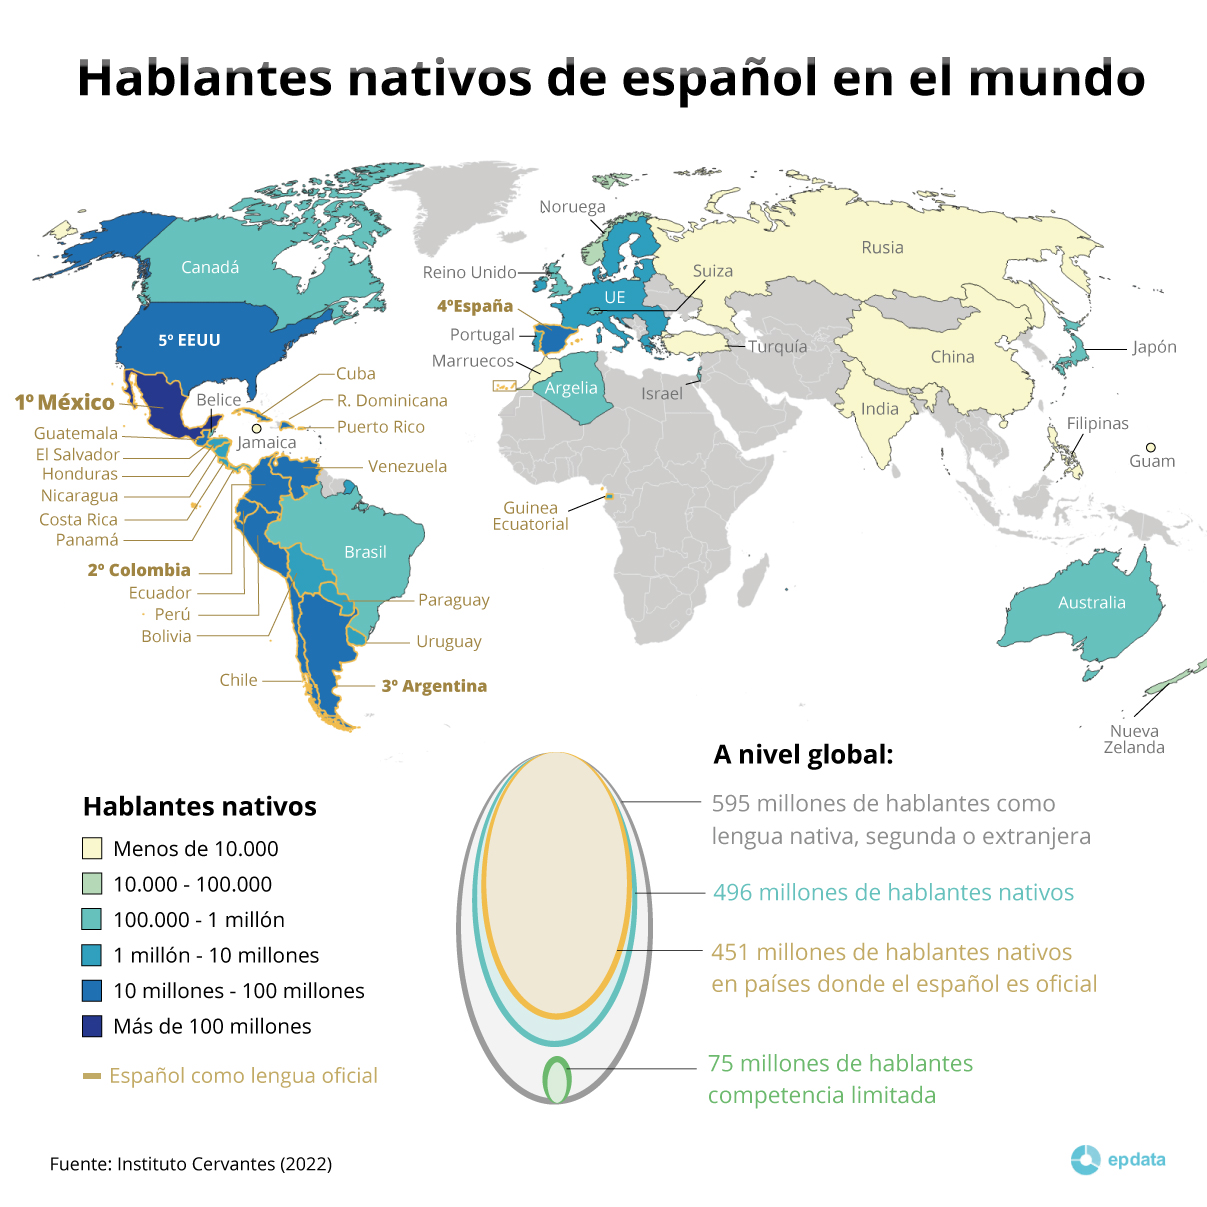 Mapa que señala los países mundiales con mayor concentración de hablantes nativos de español.